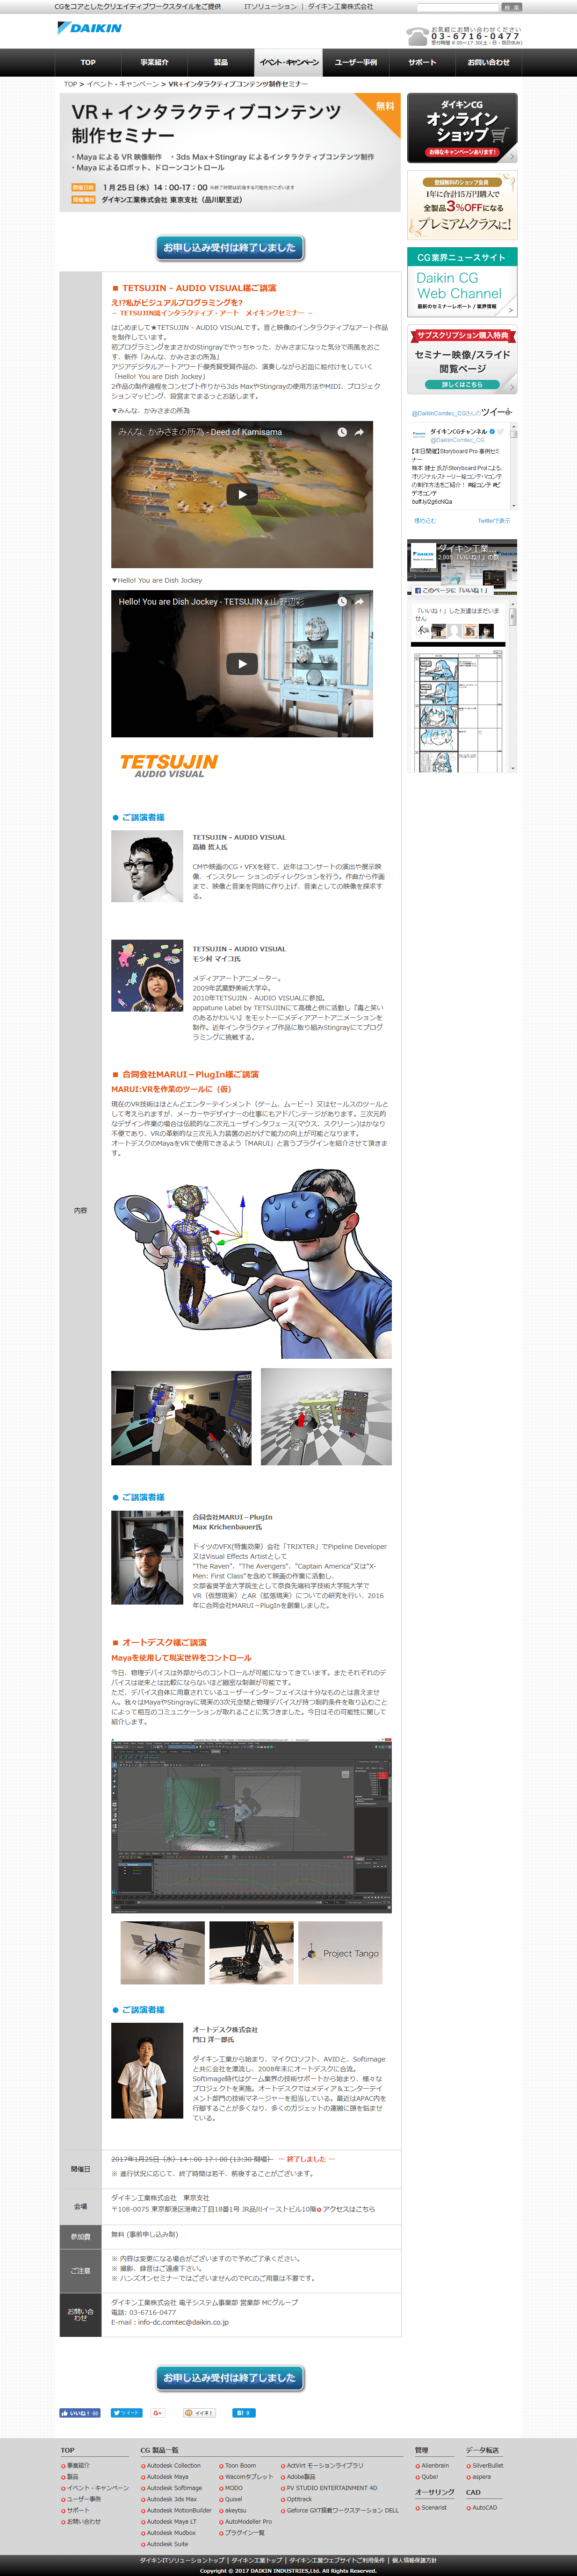 VR+インタラクティブコンテンツ制作セミナー